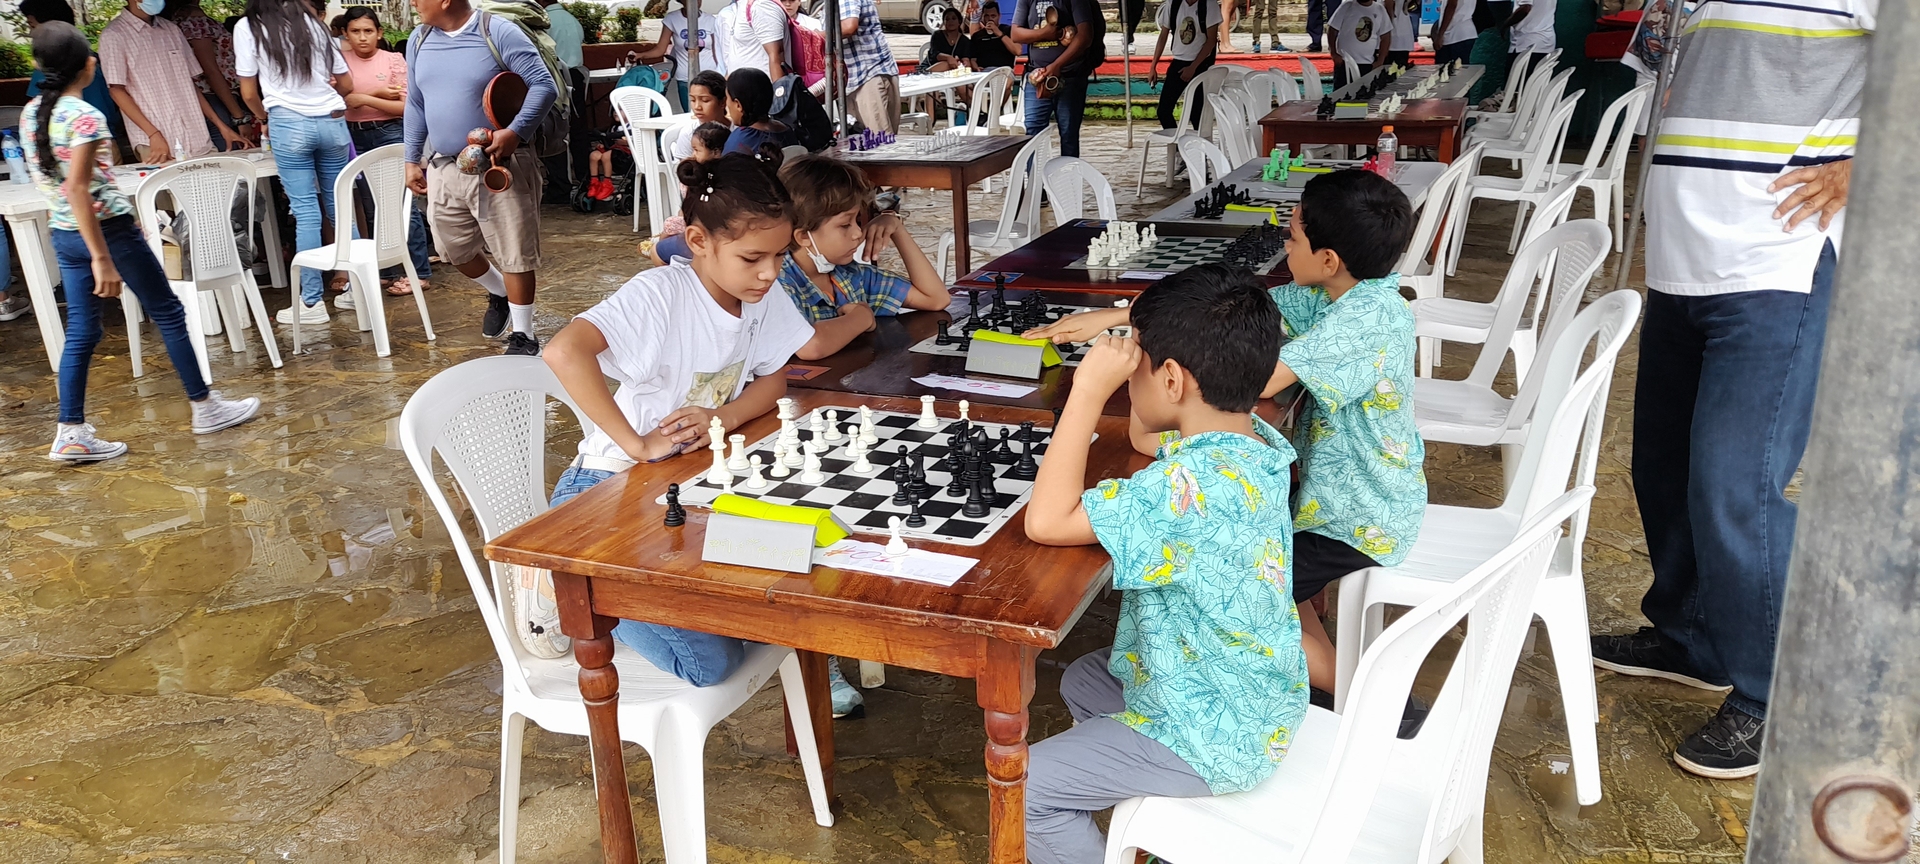 El torneo de ajedrez se llevó a cabo en tres categorías, infantil, juvenil y para mayores de 17 años en categoría libre.